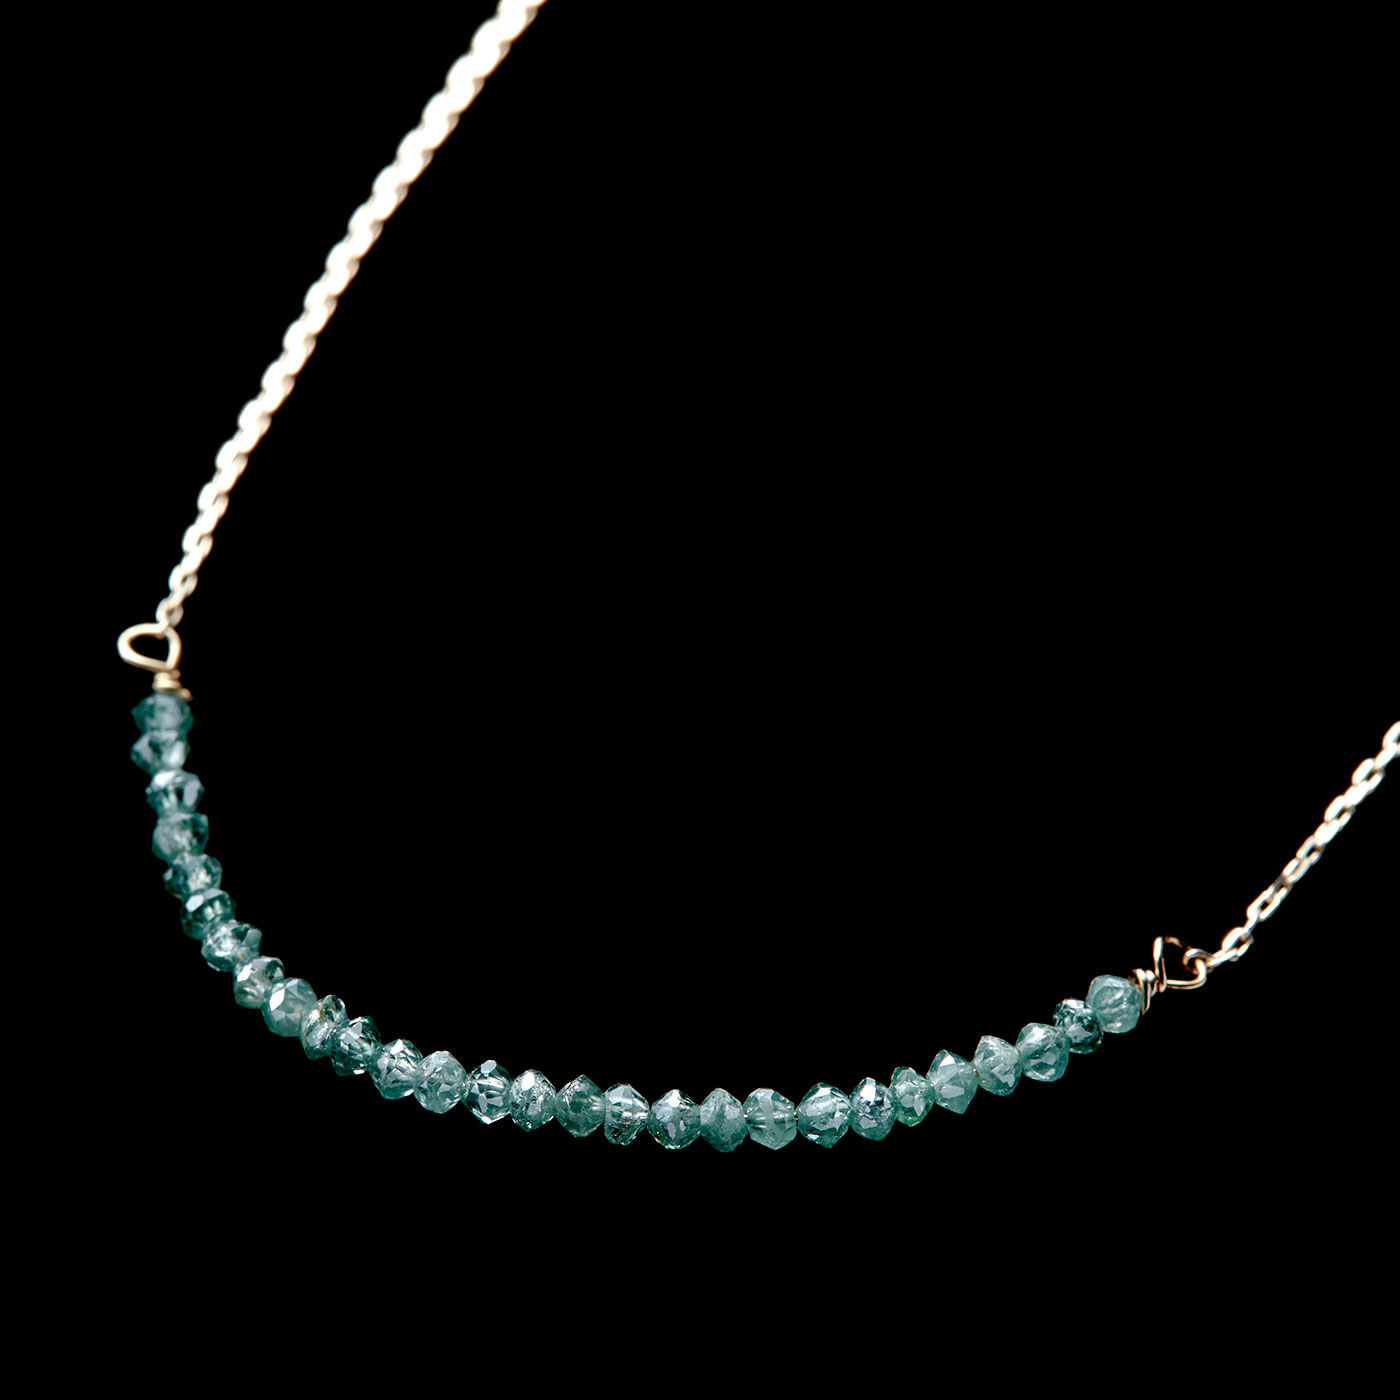 FelissimoLX|LX　オンリーワンの輝き　極小アバカスカットダイアモンド10金ネックレス（ブルーグリーン）|小さな粒がアバカス（そろばん）の珠のように多面的にカットされているので、表情豊かに可憐に煌めきます。